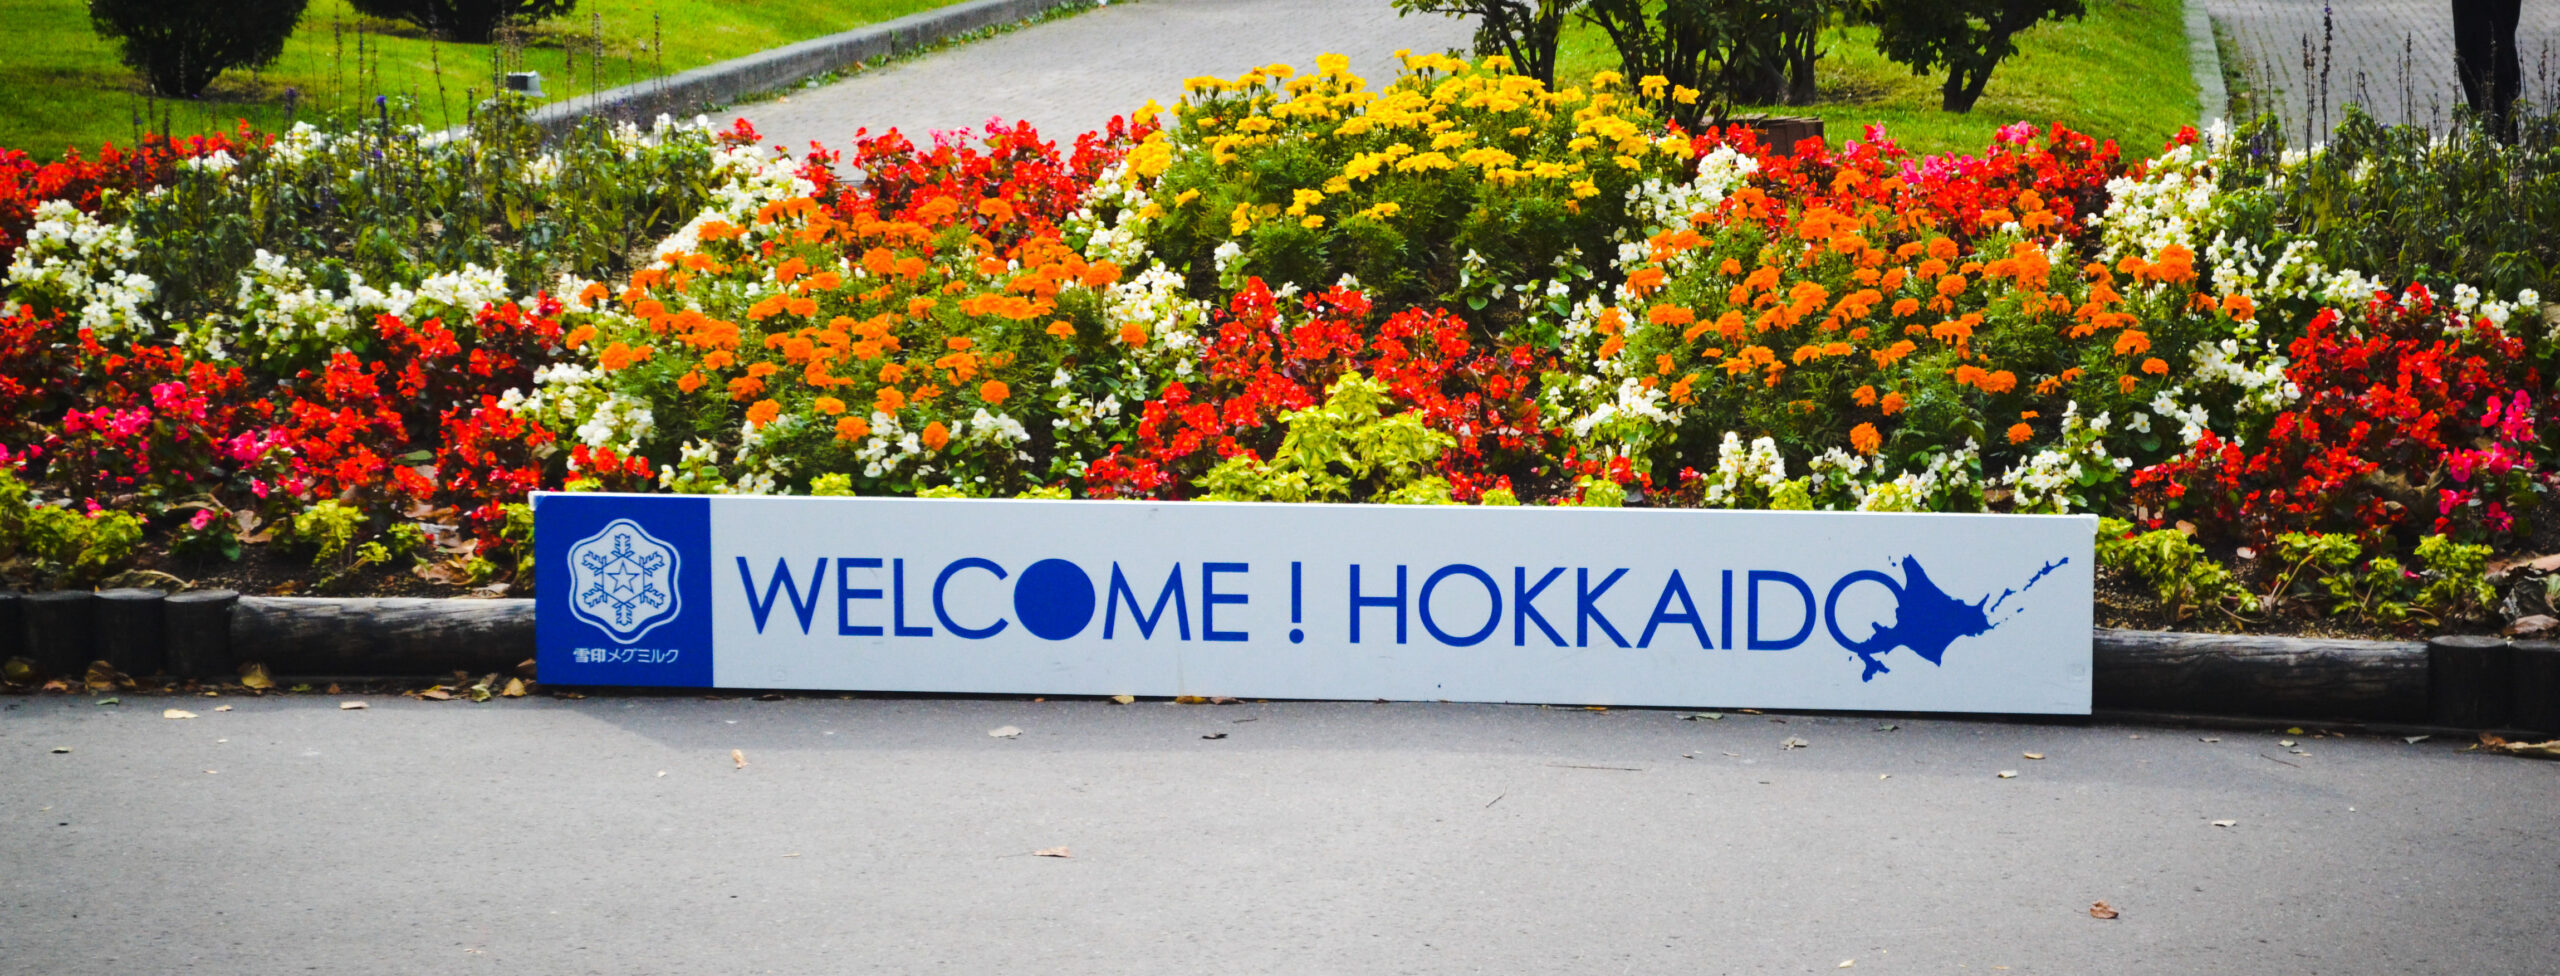 Greetings from Hokkaido, Japan